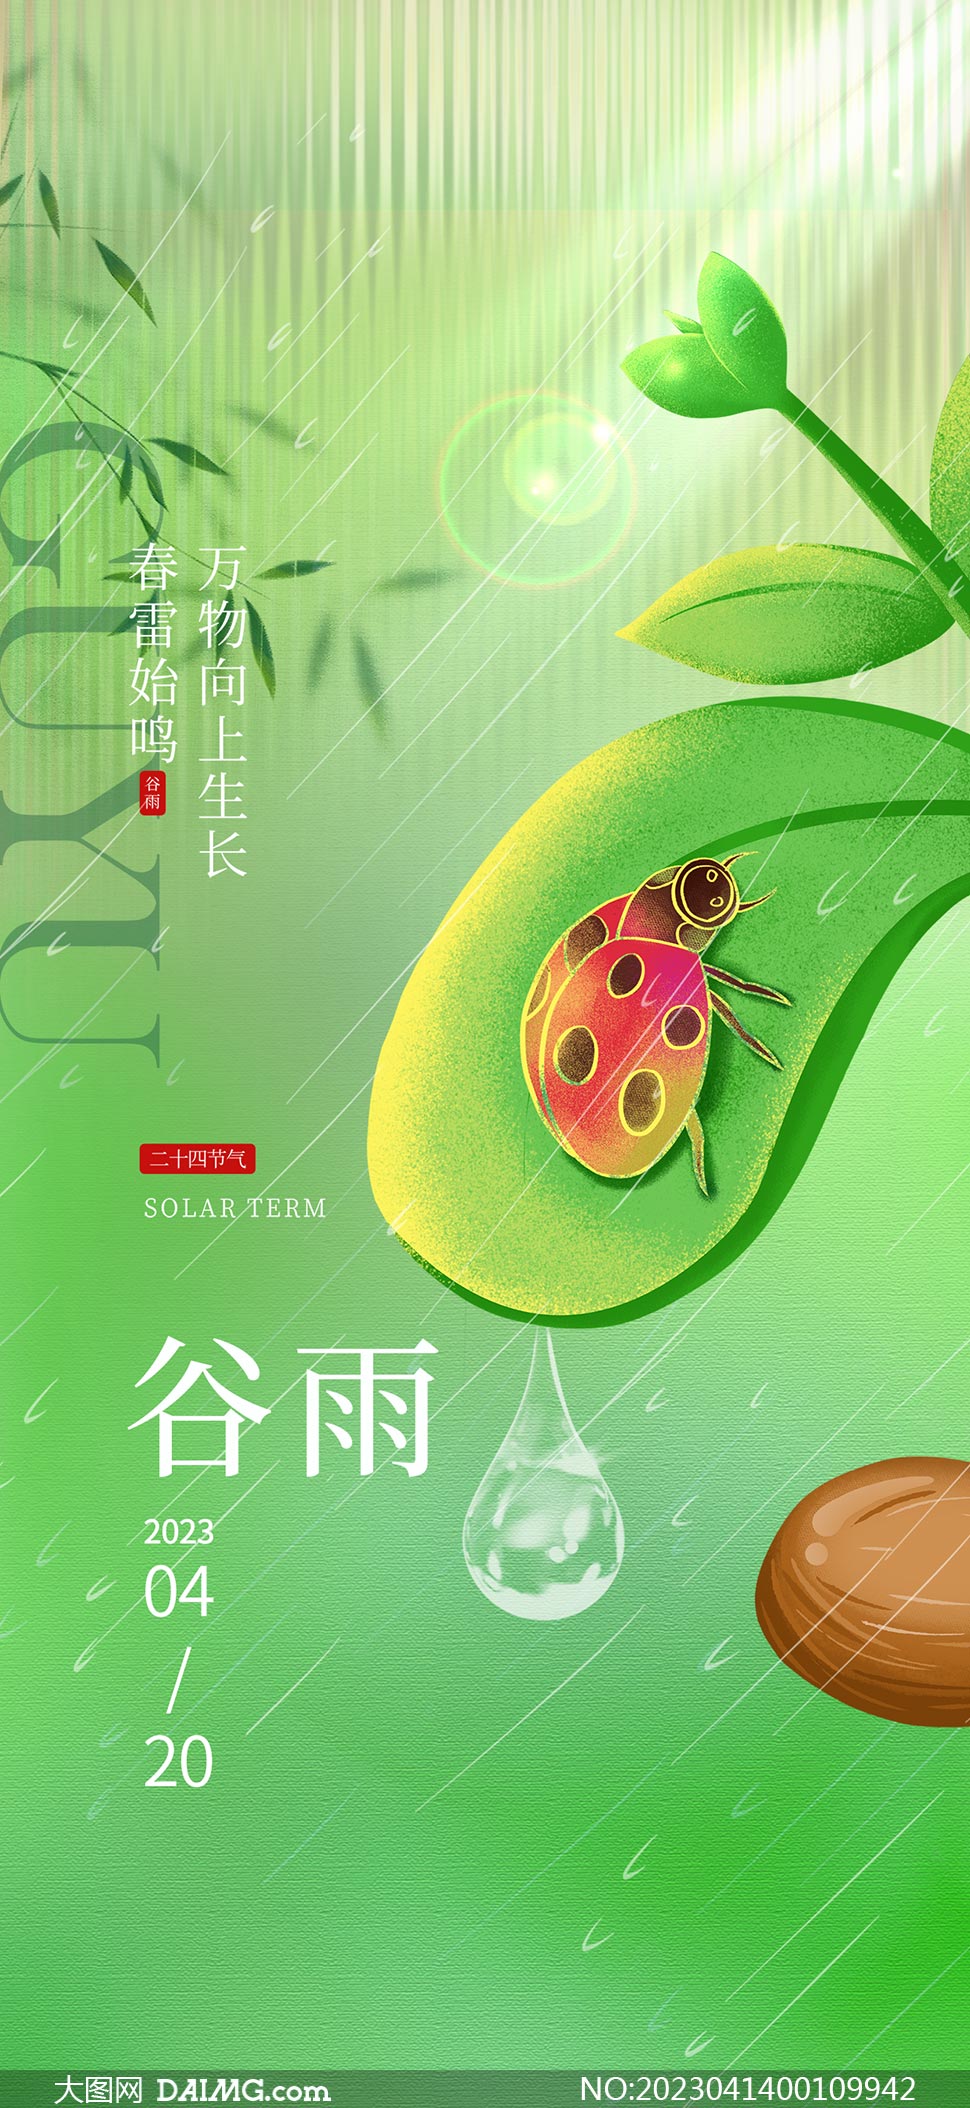 绿叶和瓢虫主题谷雨节气手机端海报PSD素材